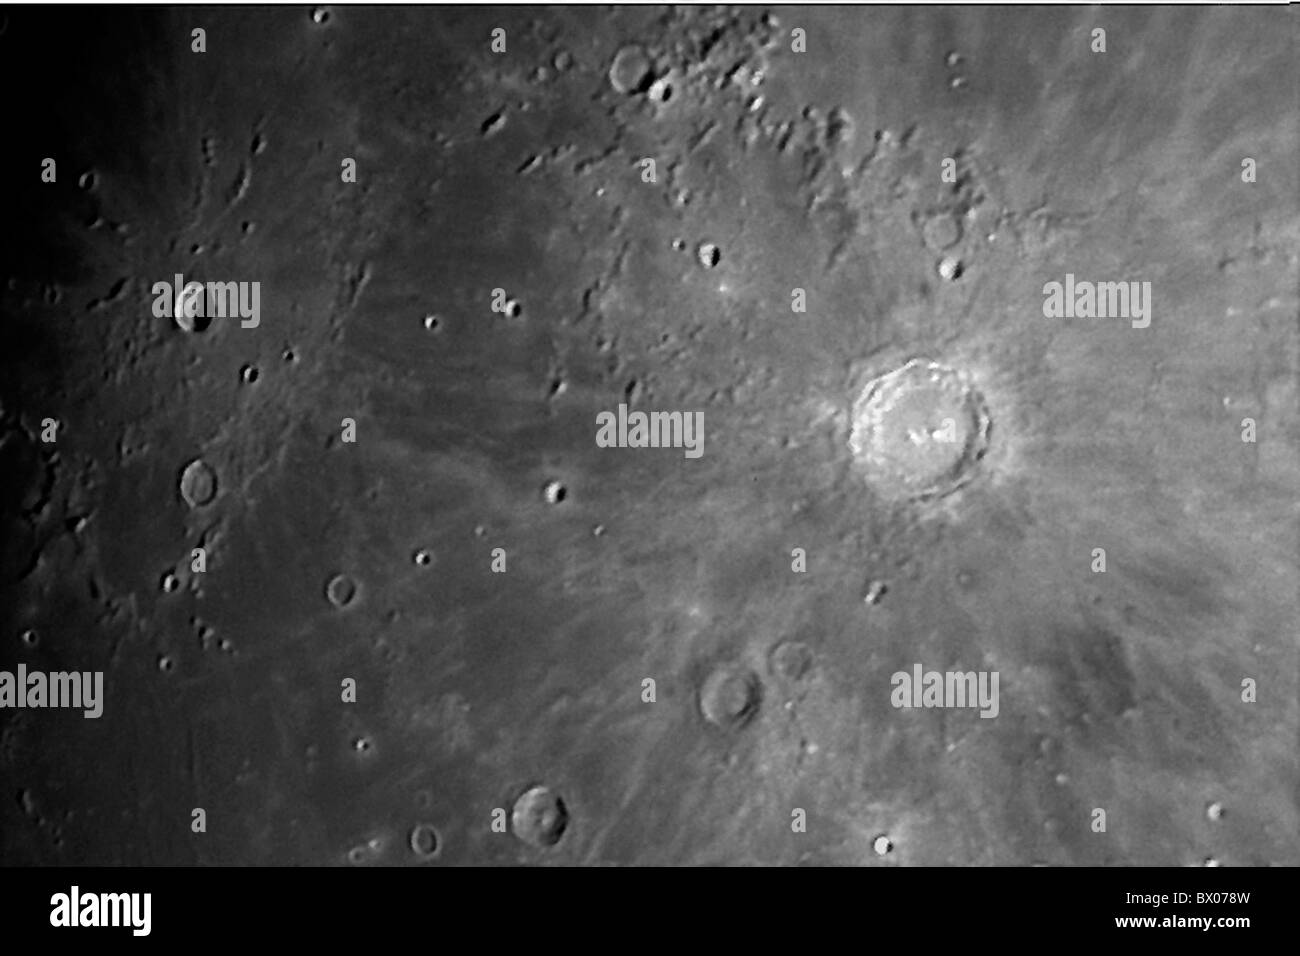 Astronomia Copernico dettaglio Kopernikus cratere lunare luna superficie di superficie in bianco e nero Foto Stock